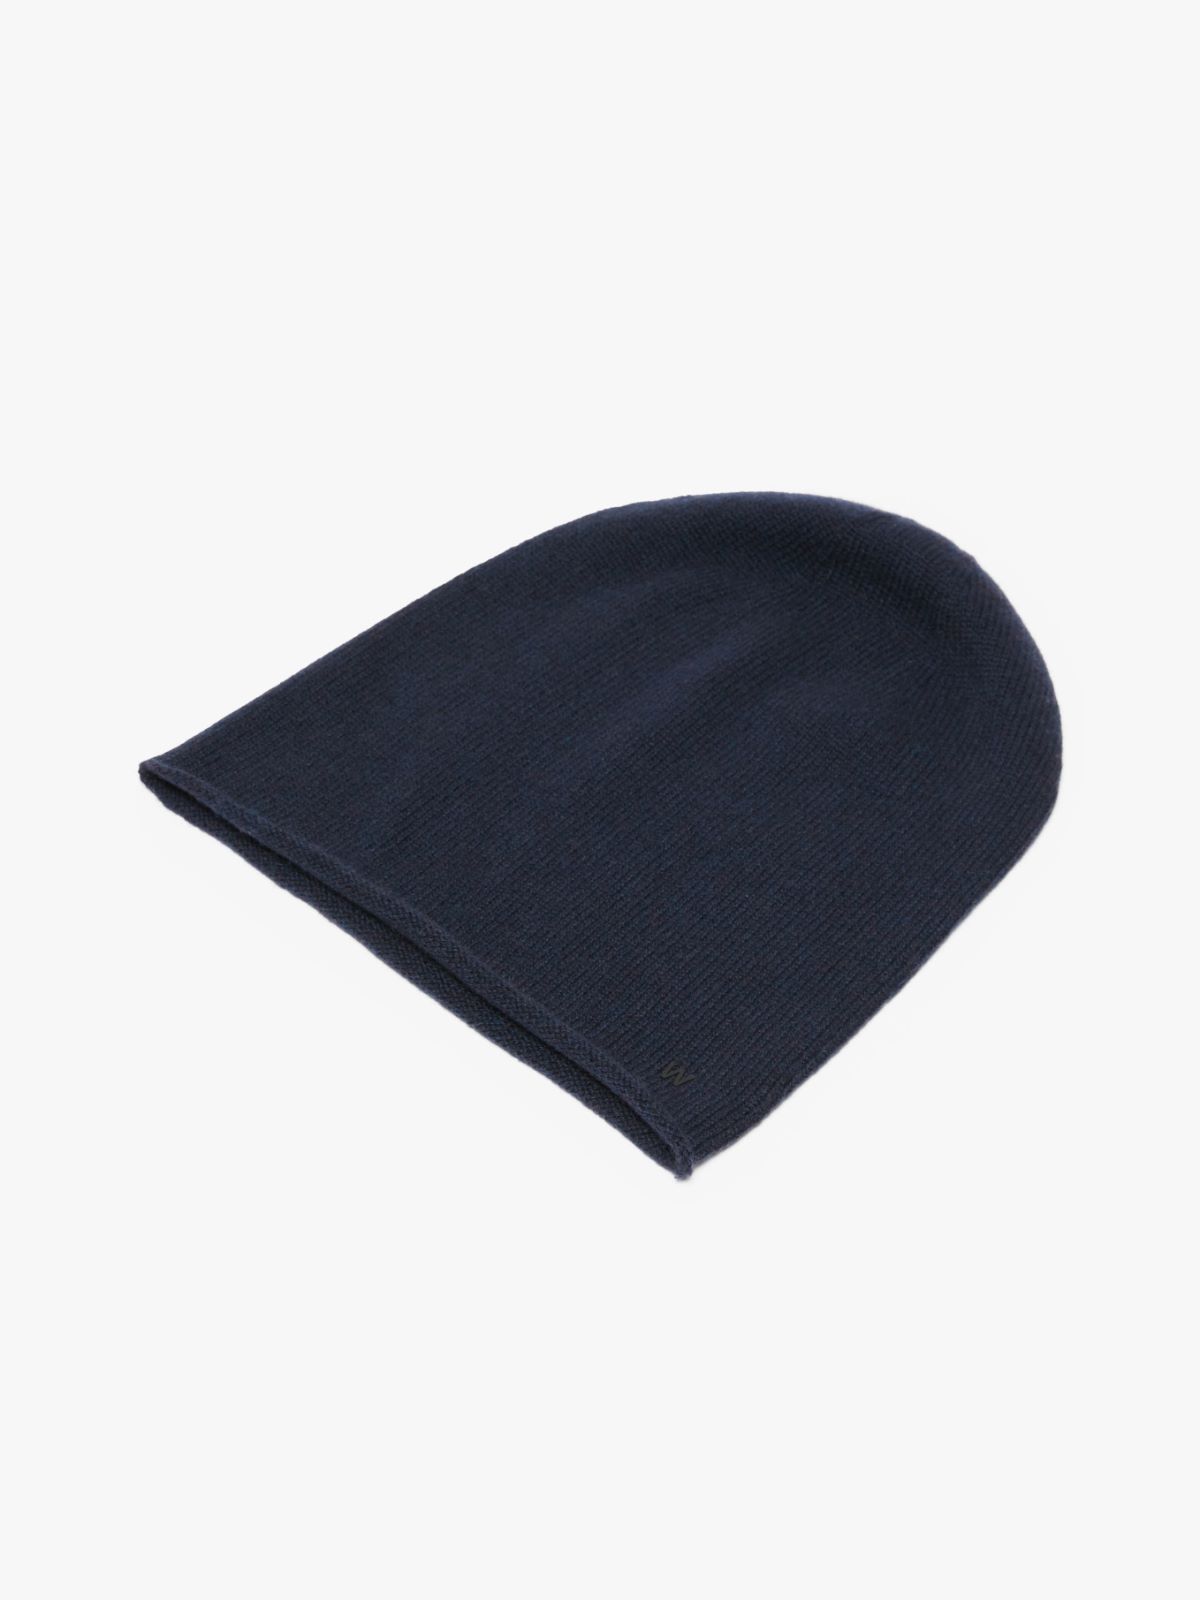 Cashmere hat - MIDNIGHTBLUE - Weekend Max Mara - 2